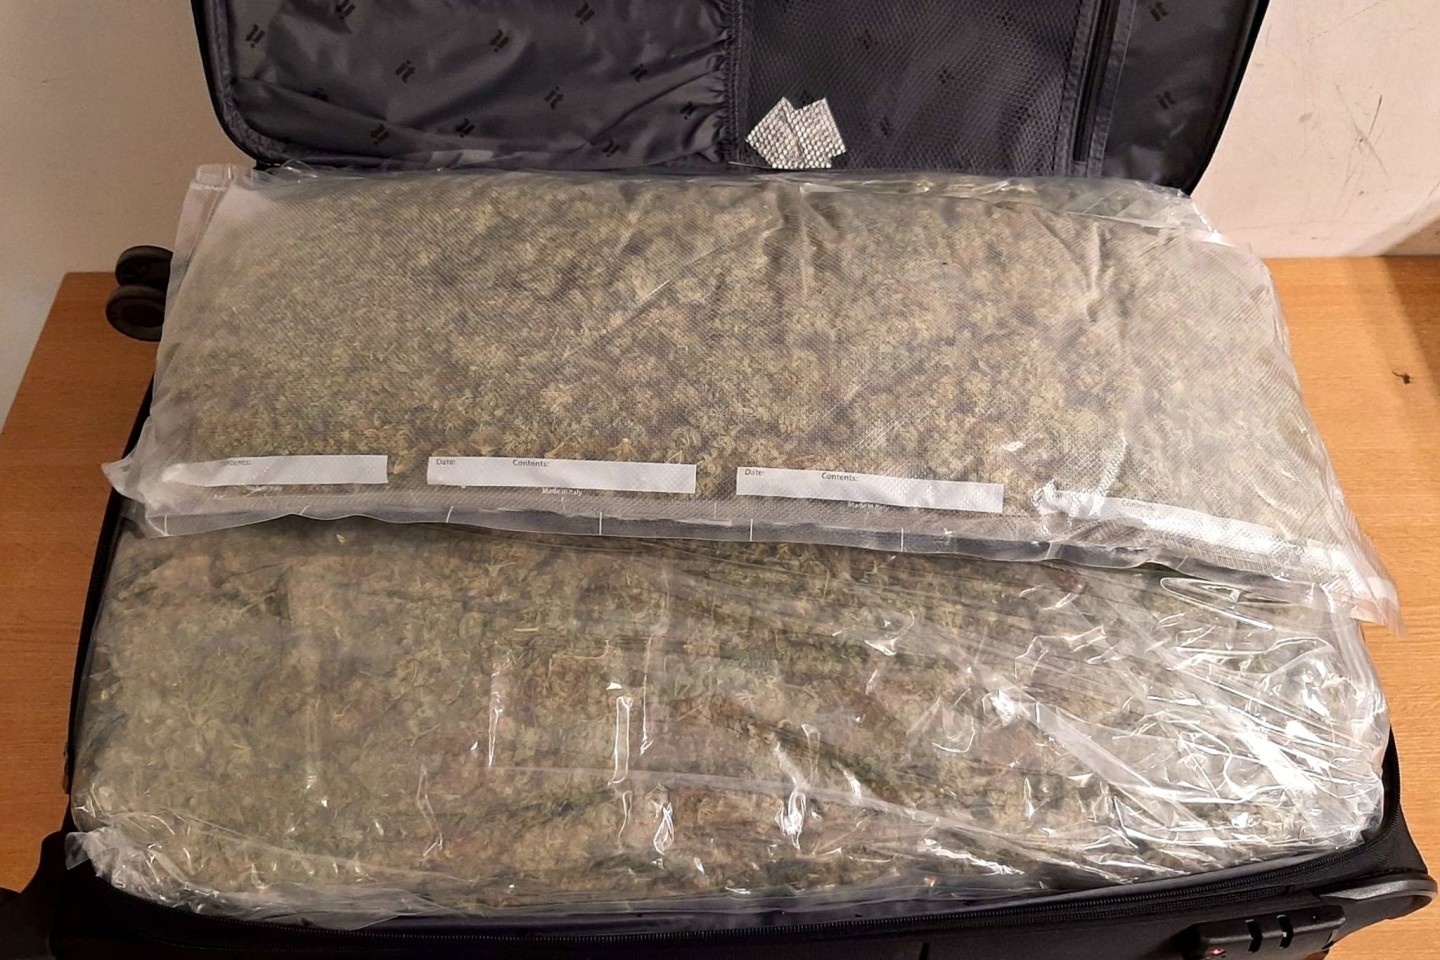 Ein Koffer voller Marihuana: In Tansania ist der mutmaßliche Boss einer Drogenbande aus Brandenburg festgenommen worden.